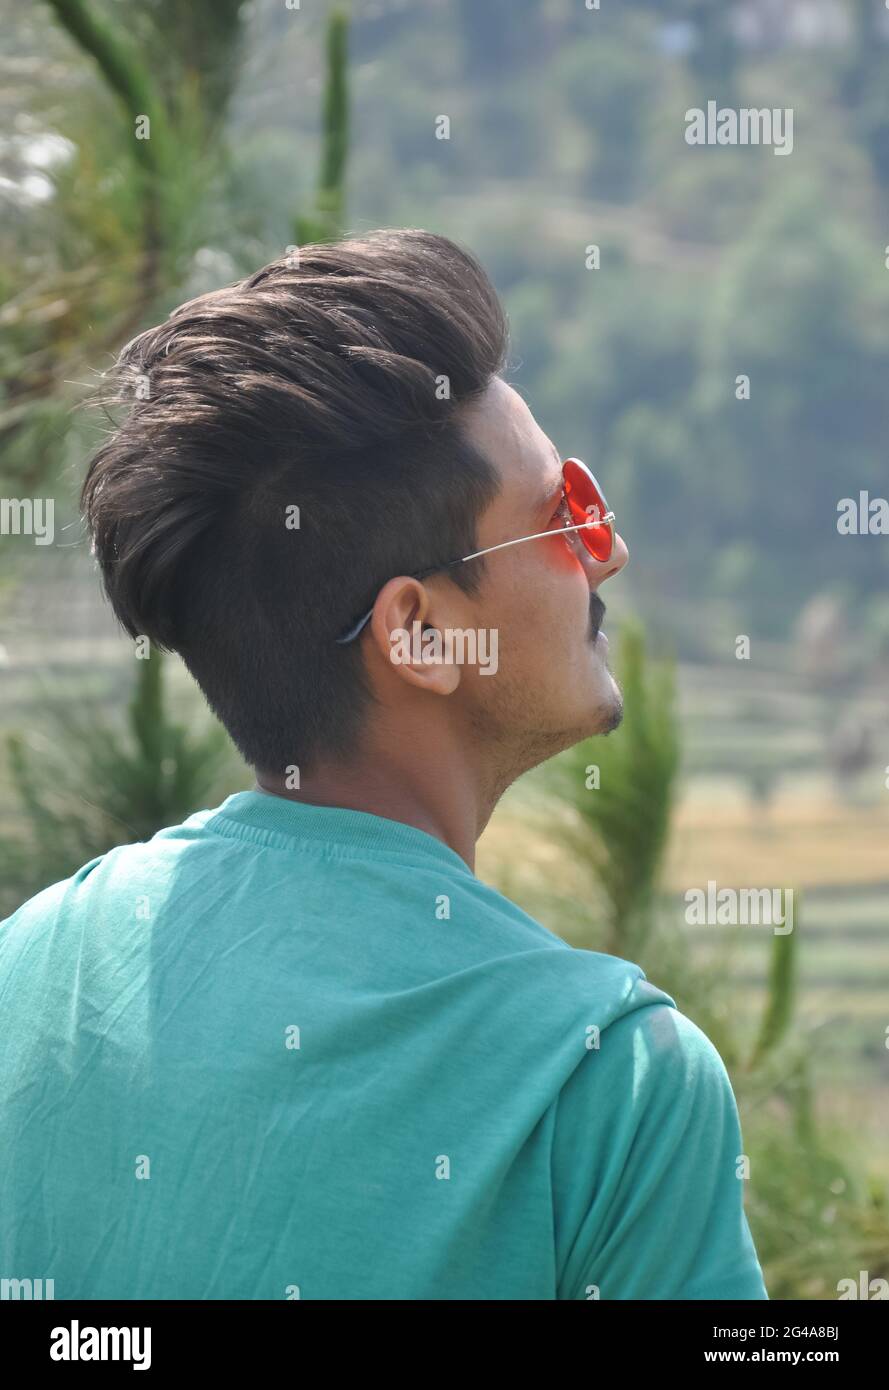 Blick von hinten auf einen hübschen indischen jungen Mann, der eine Sonnencreme trägt und im Freien in der Natur steht, während er nach oben blickt Stockfoto